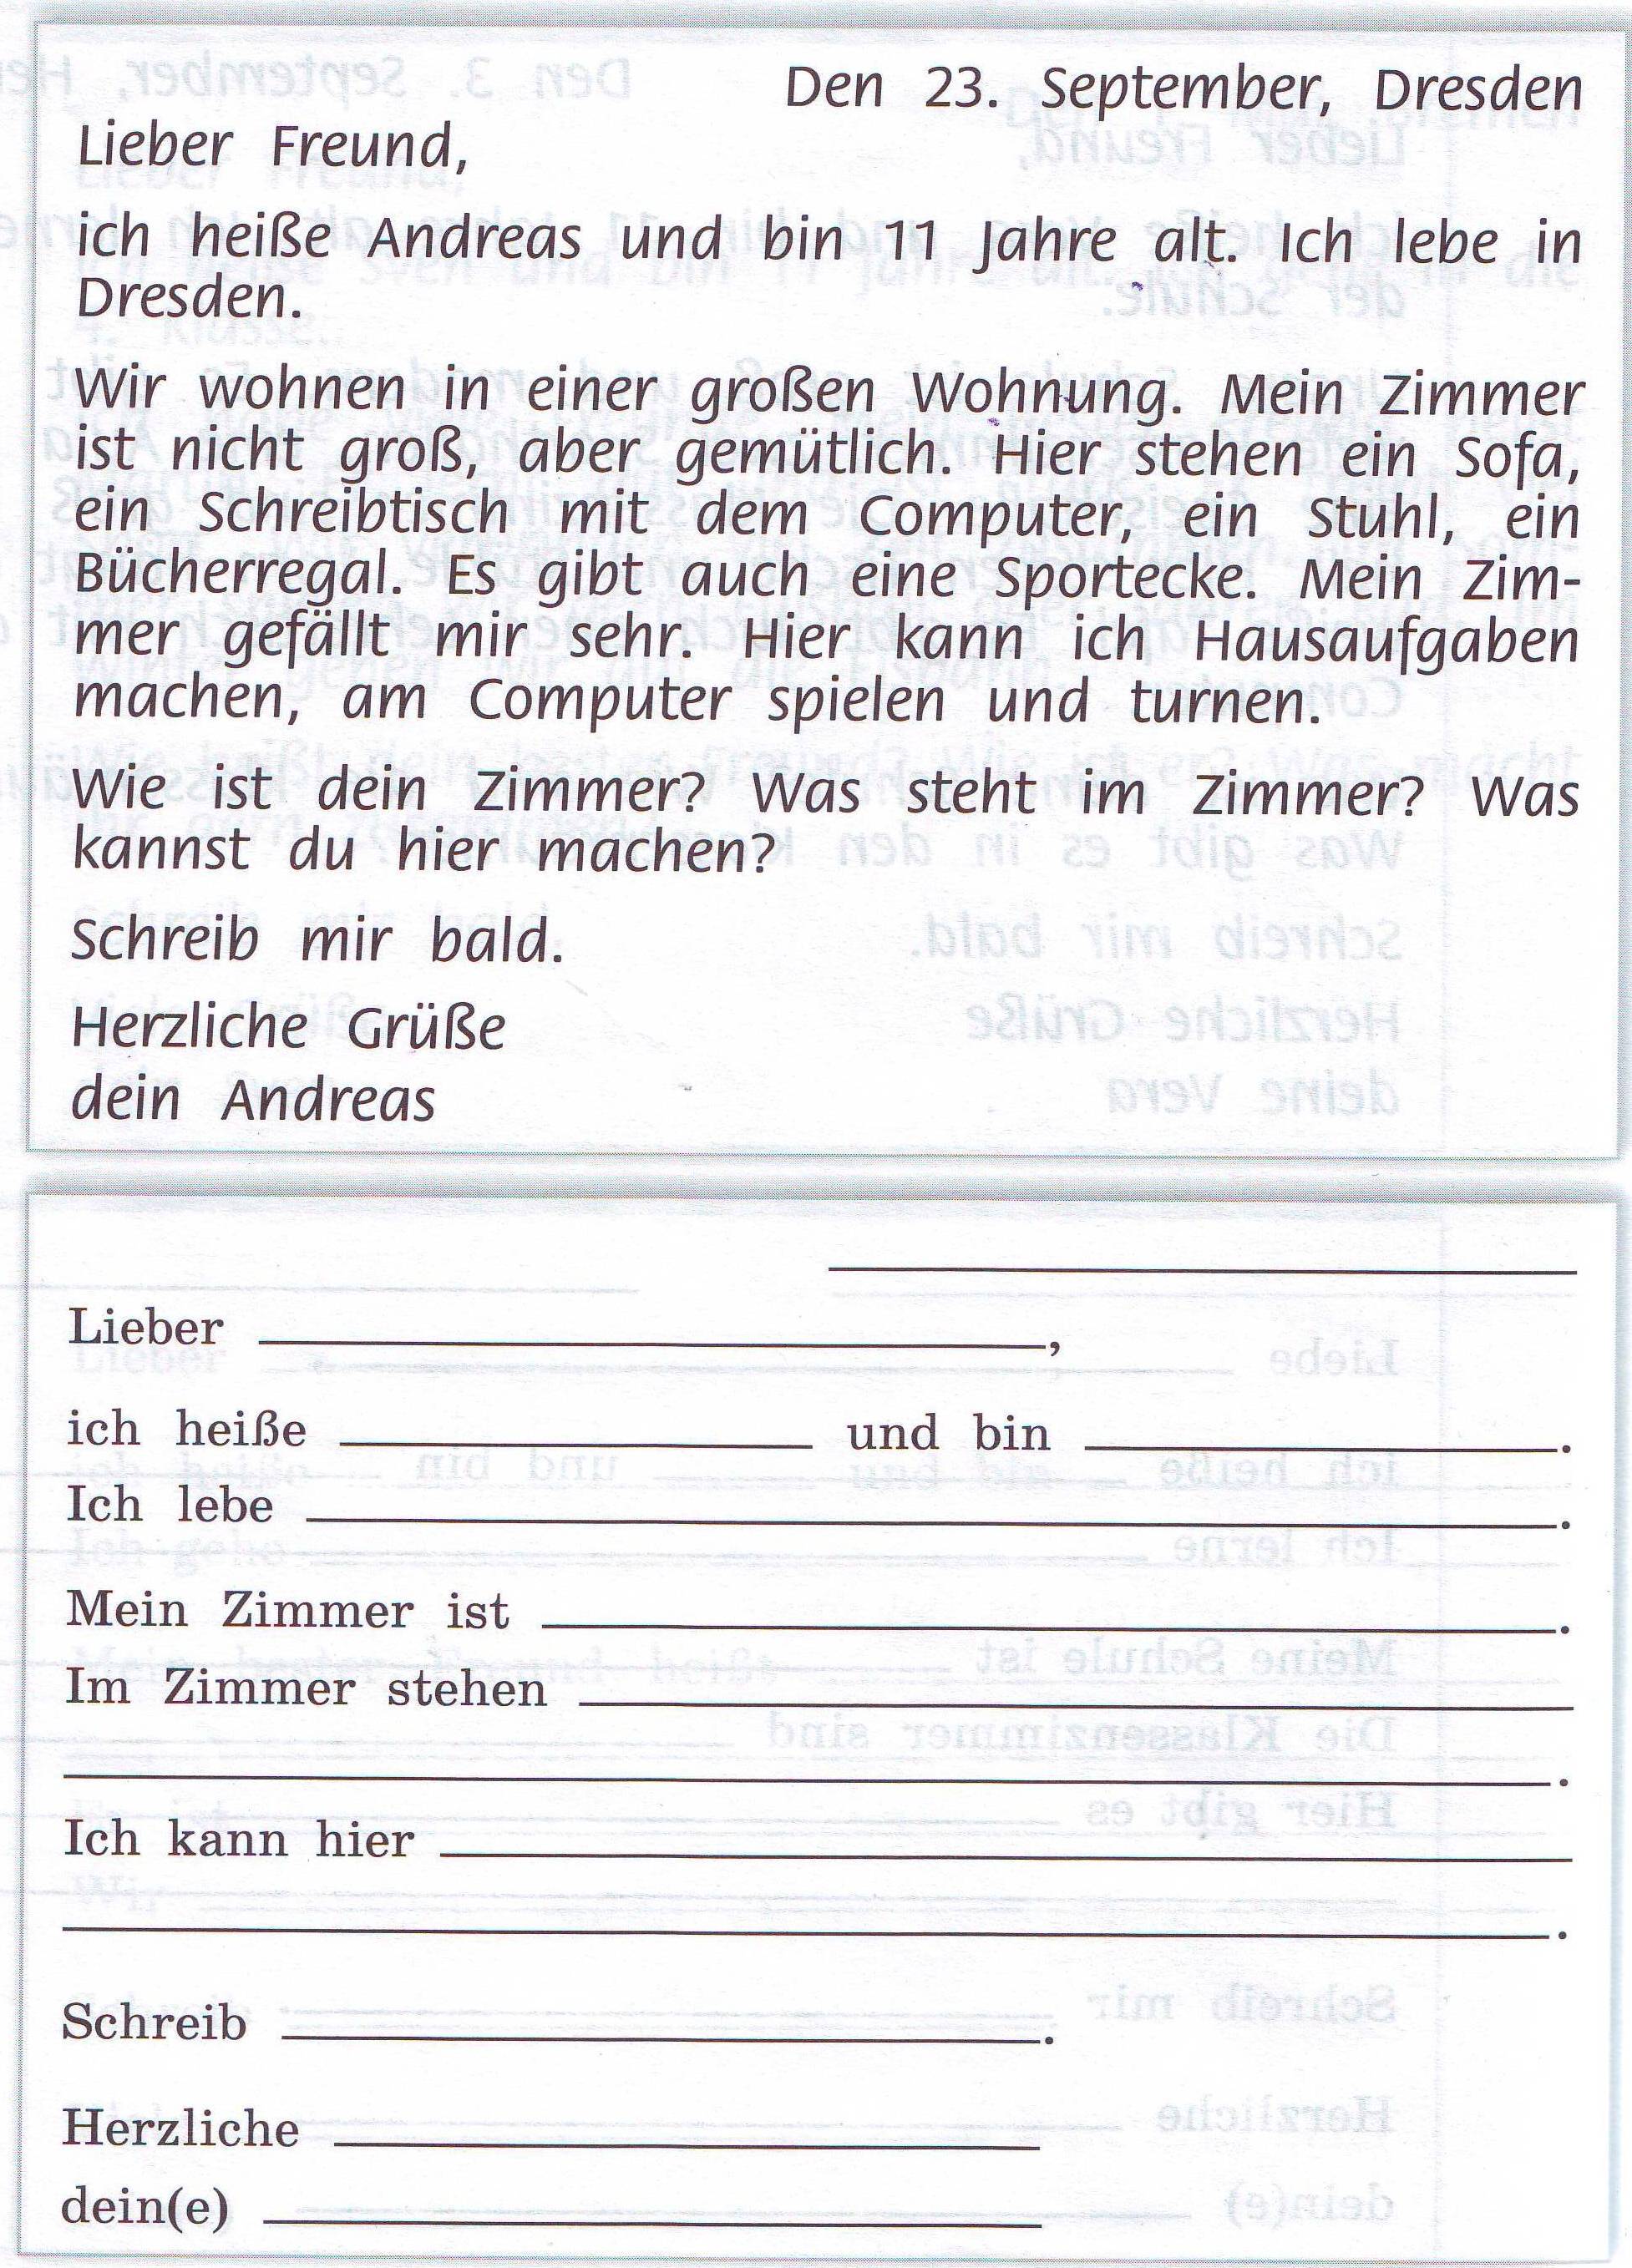 Диагностическая контрольная работа по немецкому языку в 5 классе